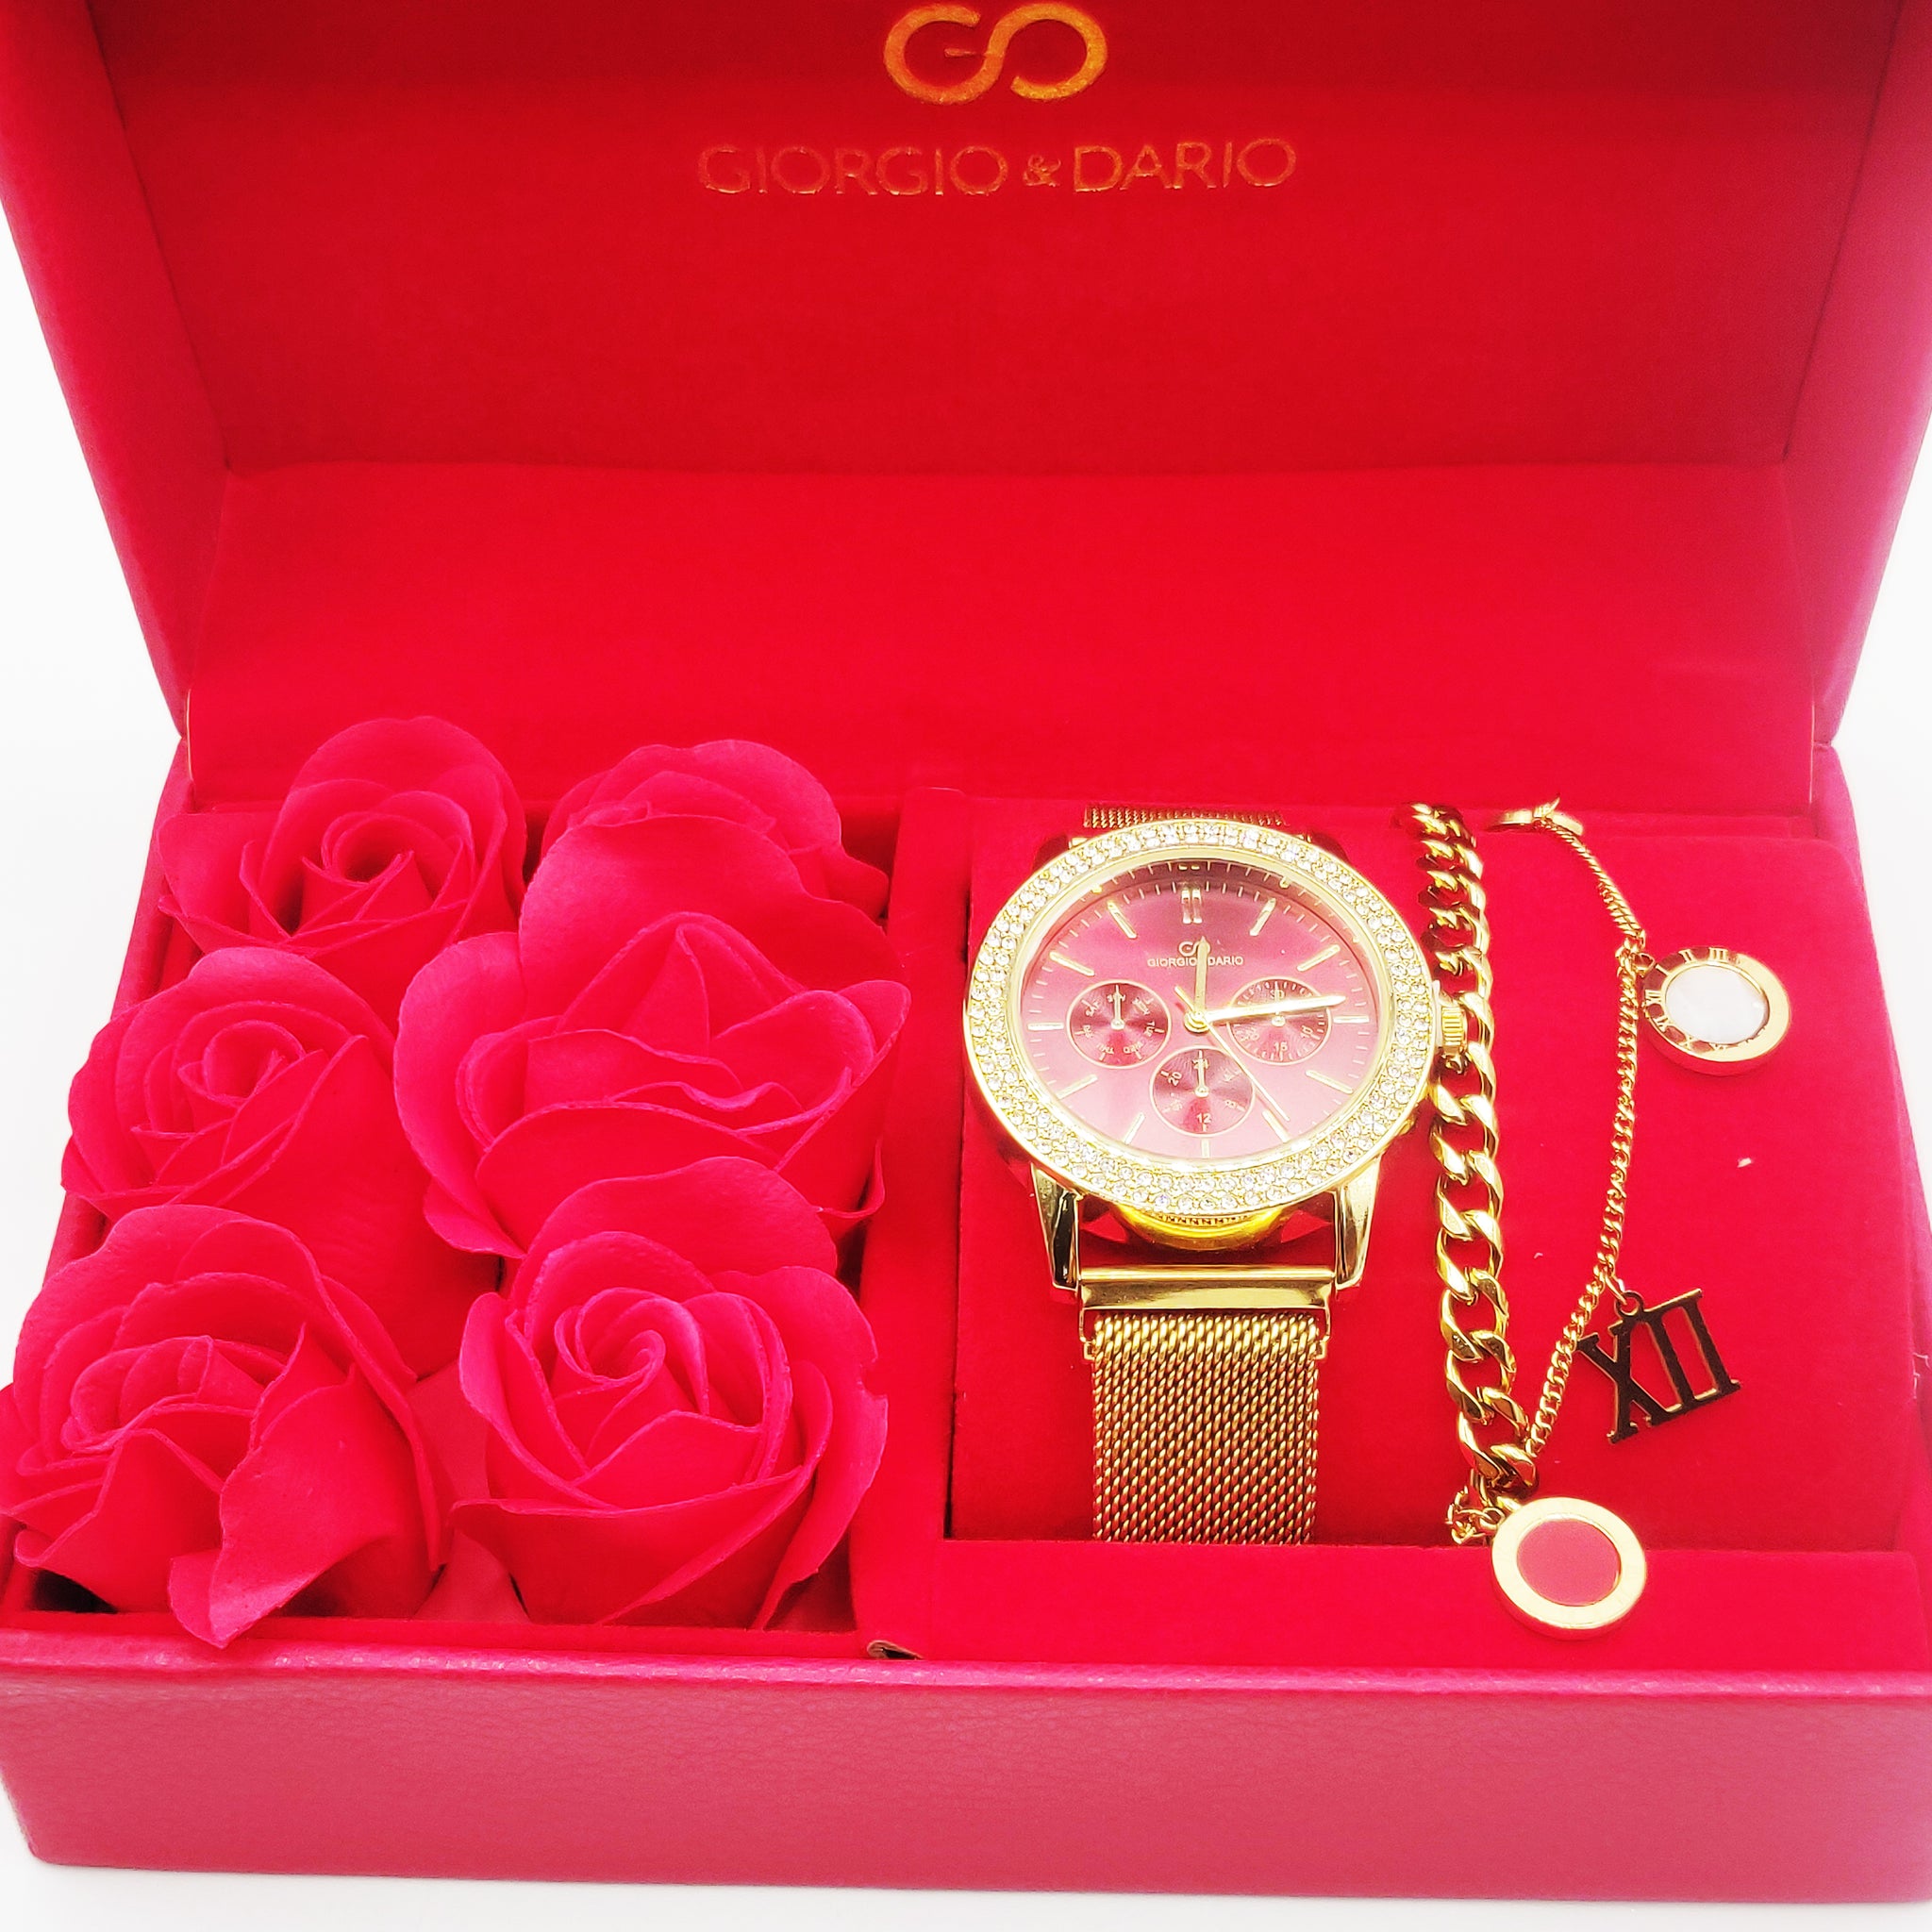 Coffret Cadeau Montre Giorgio & Dario EU5944 Fond Rouge avec Bracelet Double Romain et Roses Rouges